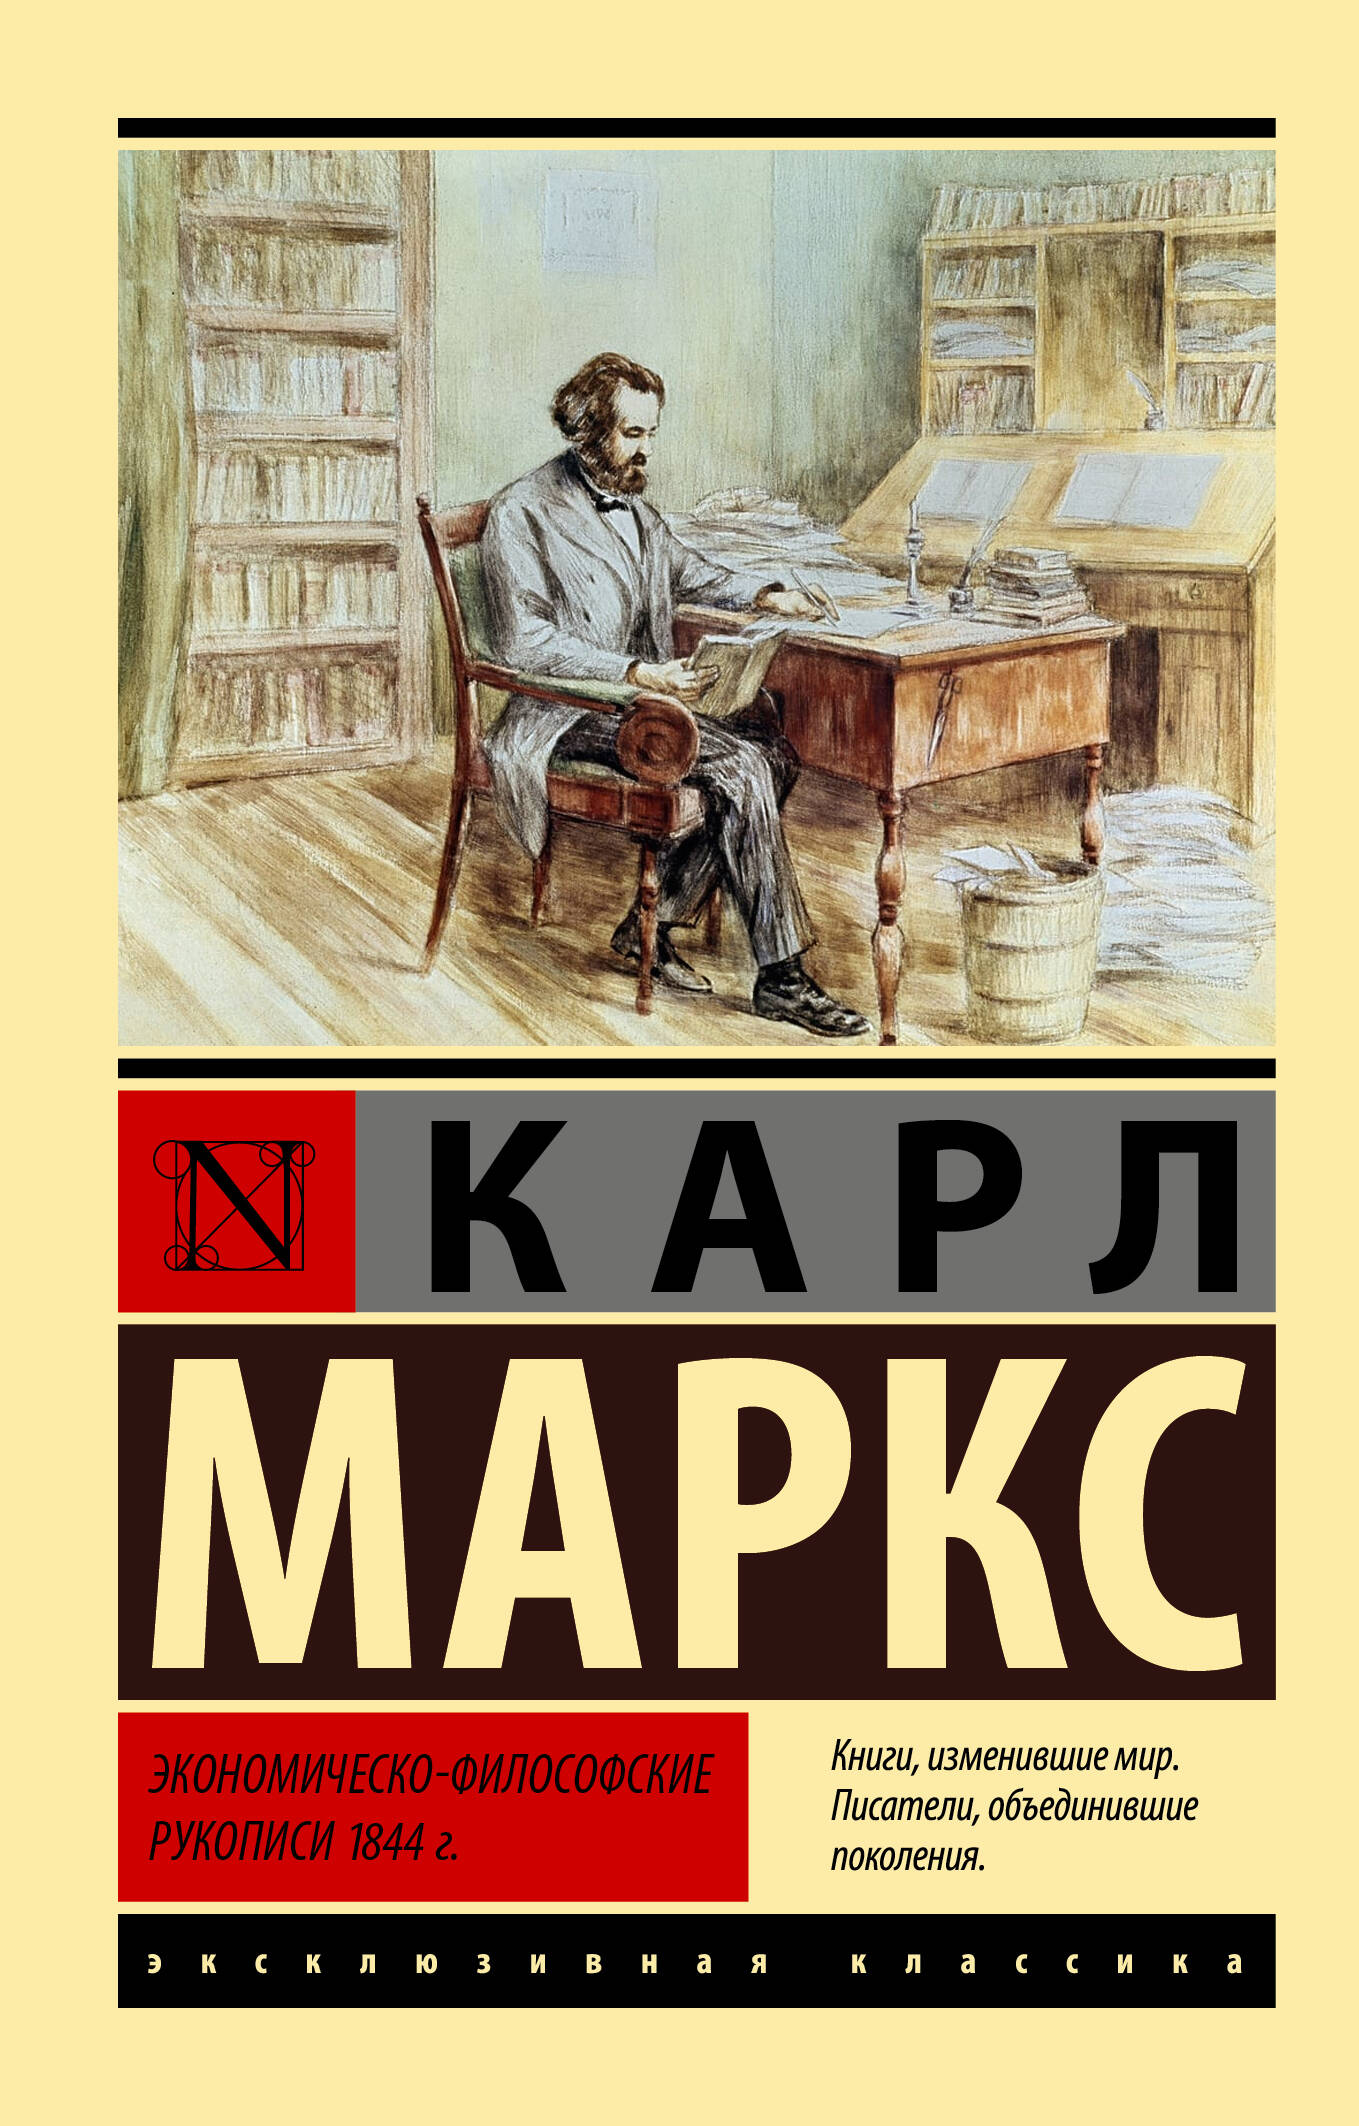 Маркс Карл Экономическо-философские рукописи 1844 г. - страница 0